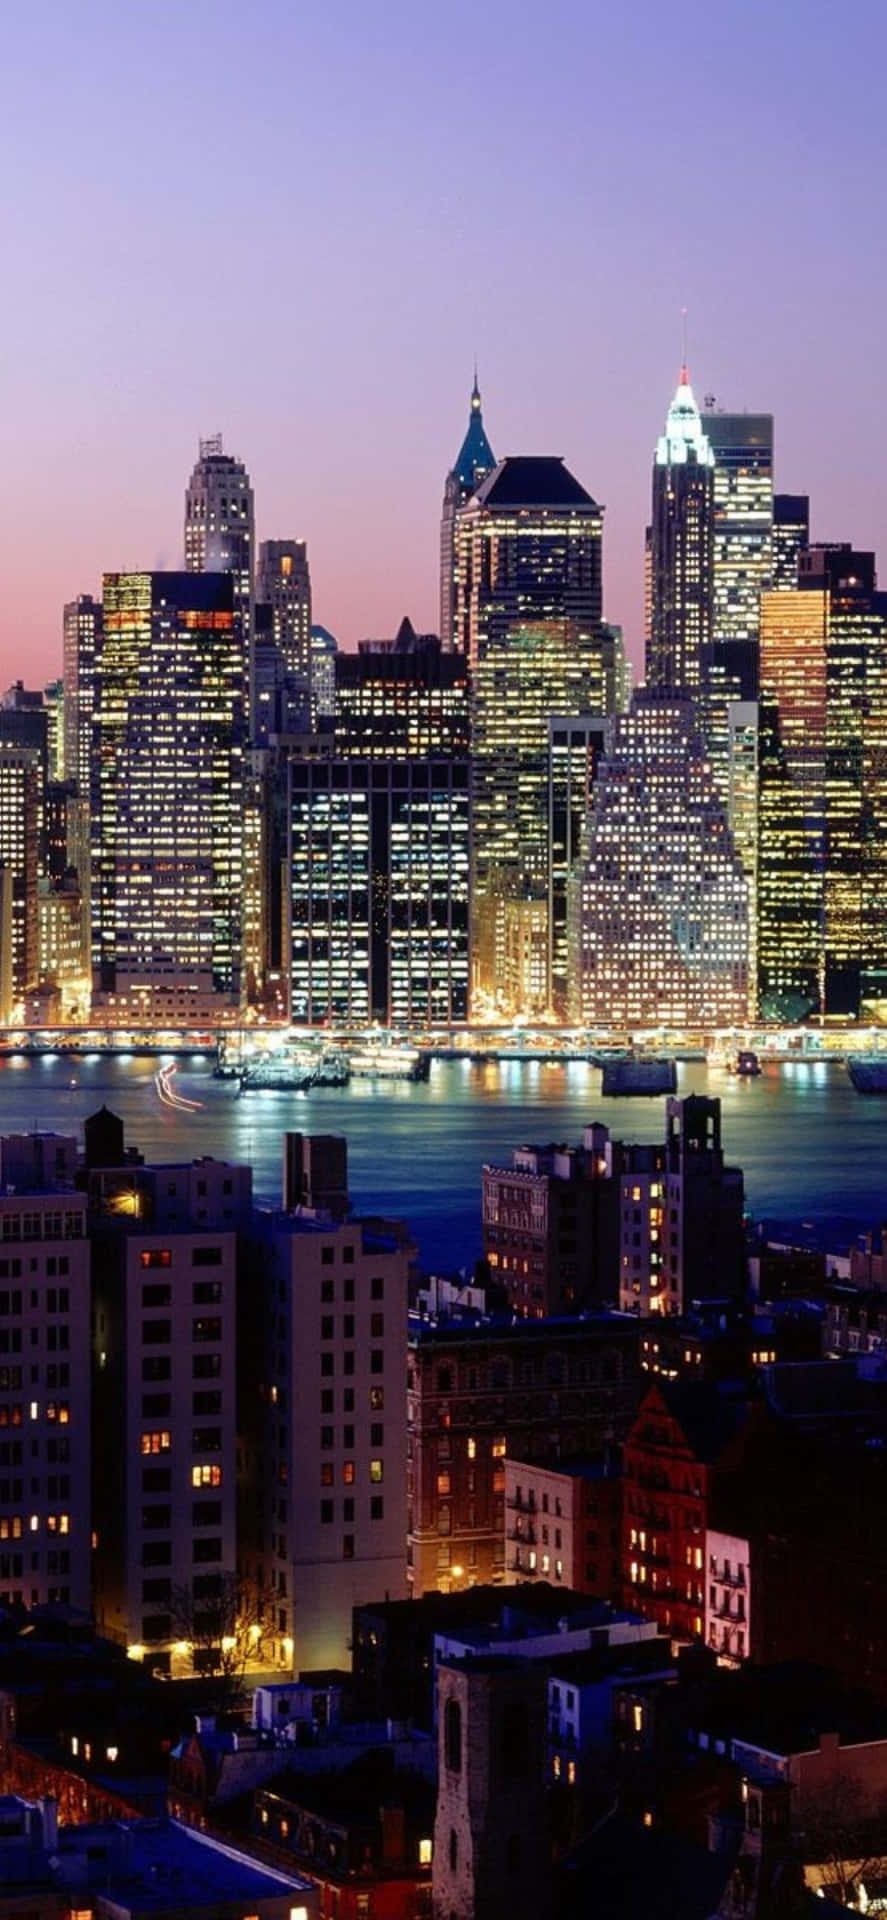 Impresionantepanorama Urbano De La Ciudad De Nueva York Visto Desde El Iphone Xs.